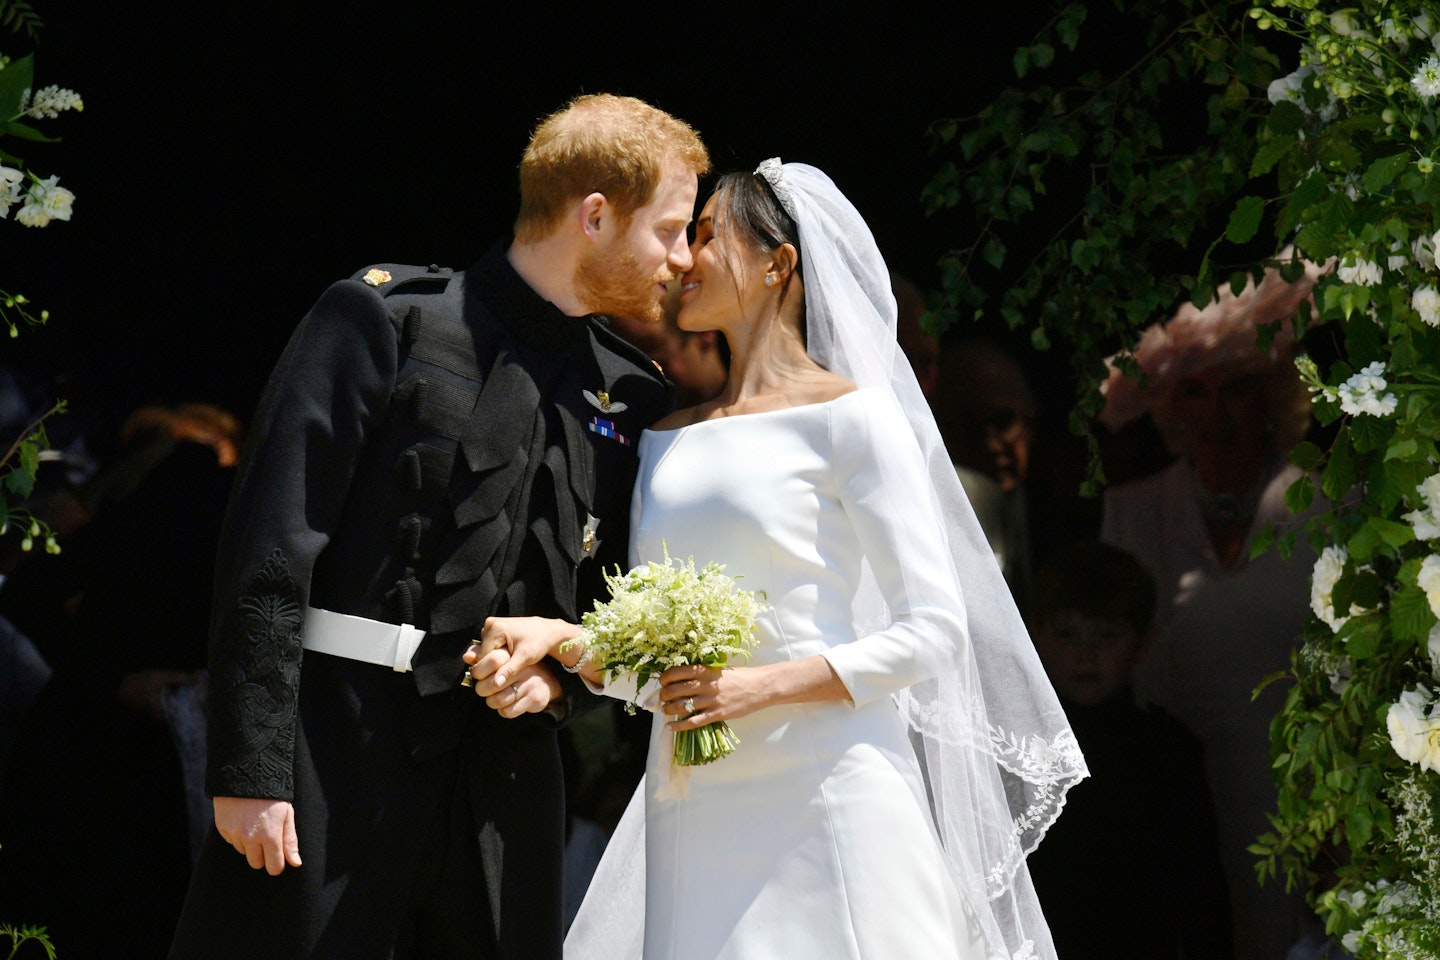 Prince Harry married Meghan Markle